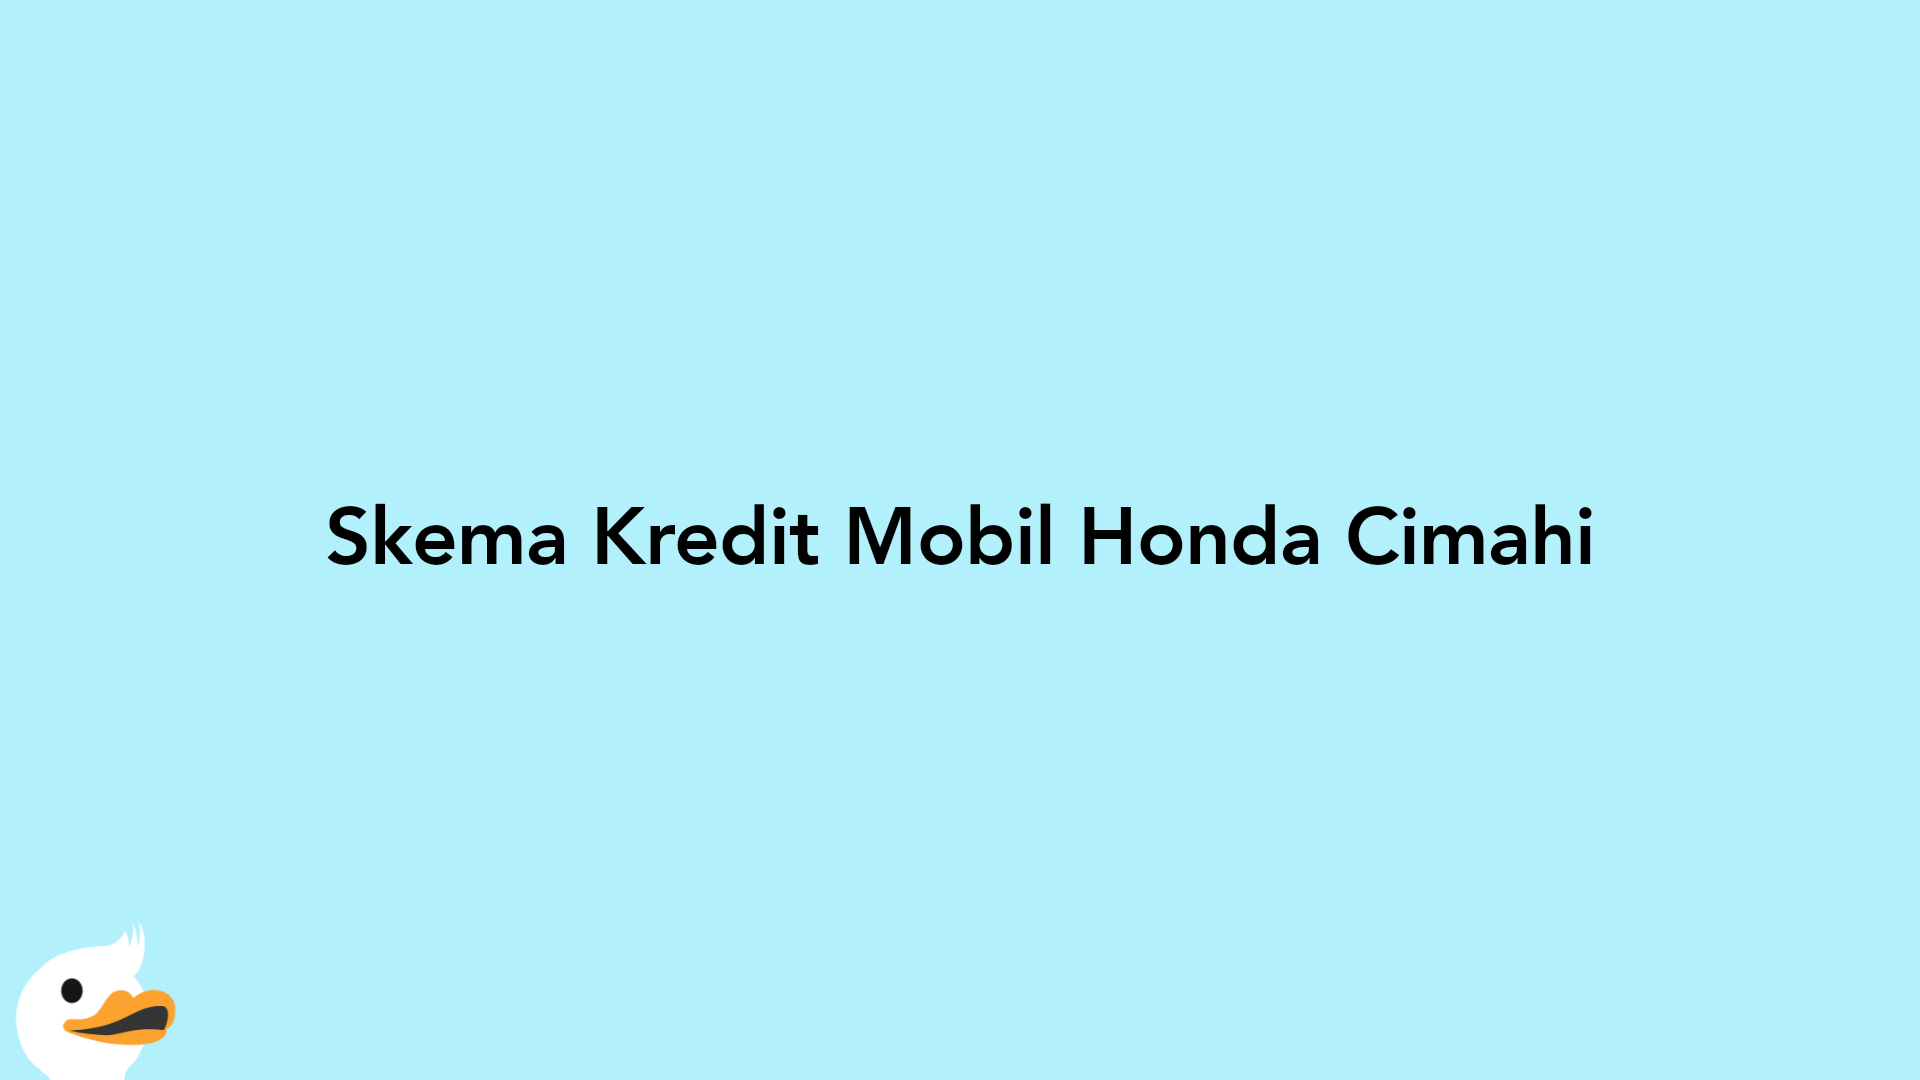 Skema Kredit Mobil Honda Cimahi